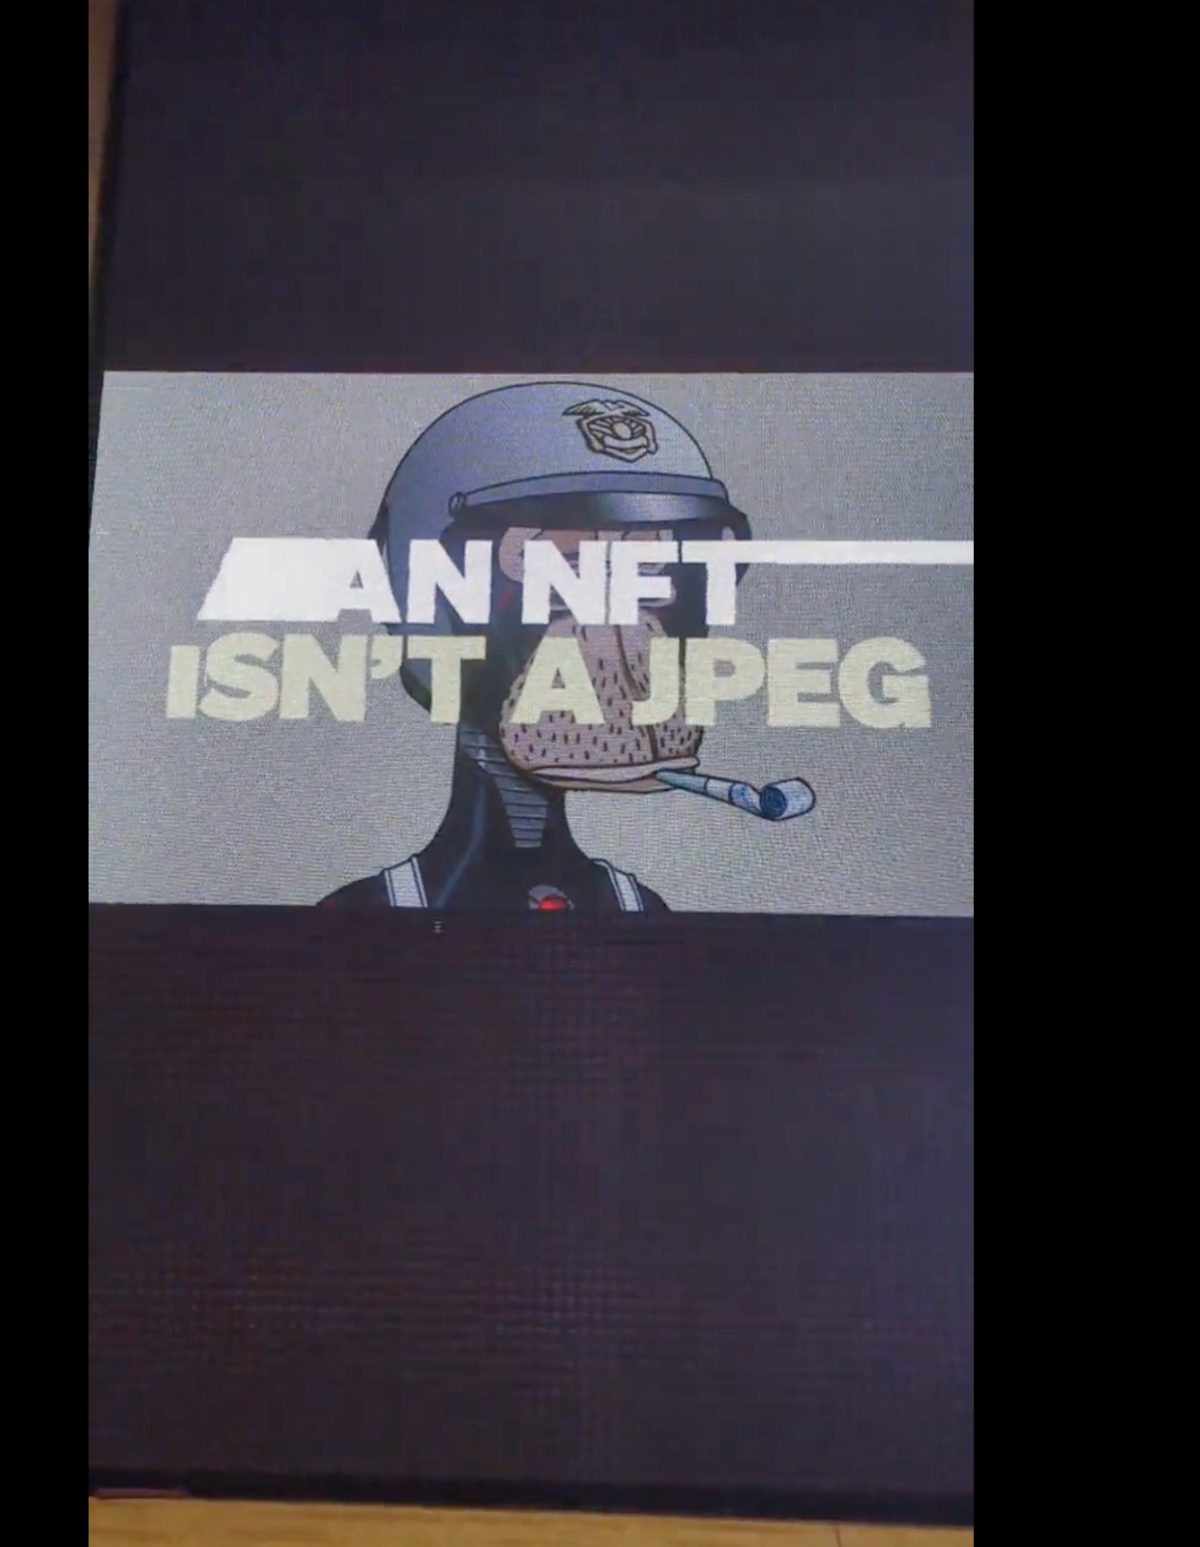 Видеоролик об NFT. Источник: страница Алегре в X (Twitter)